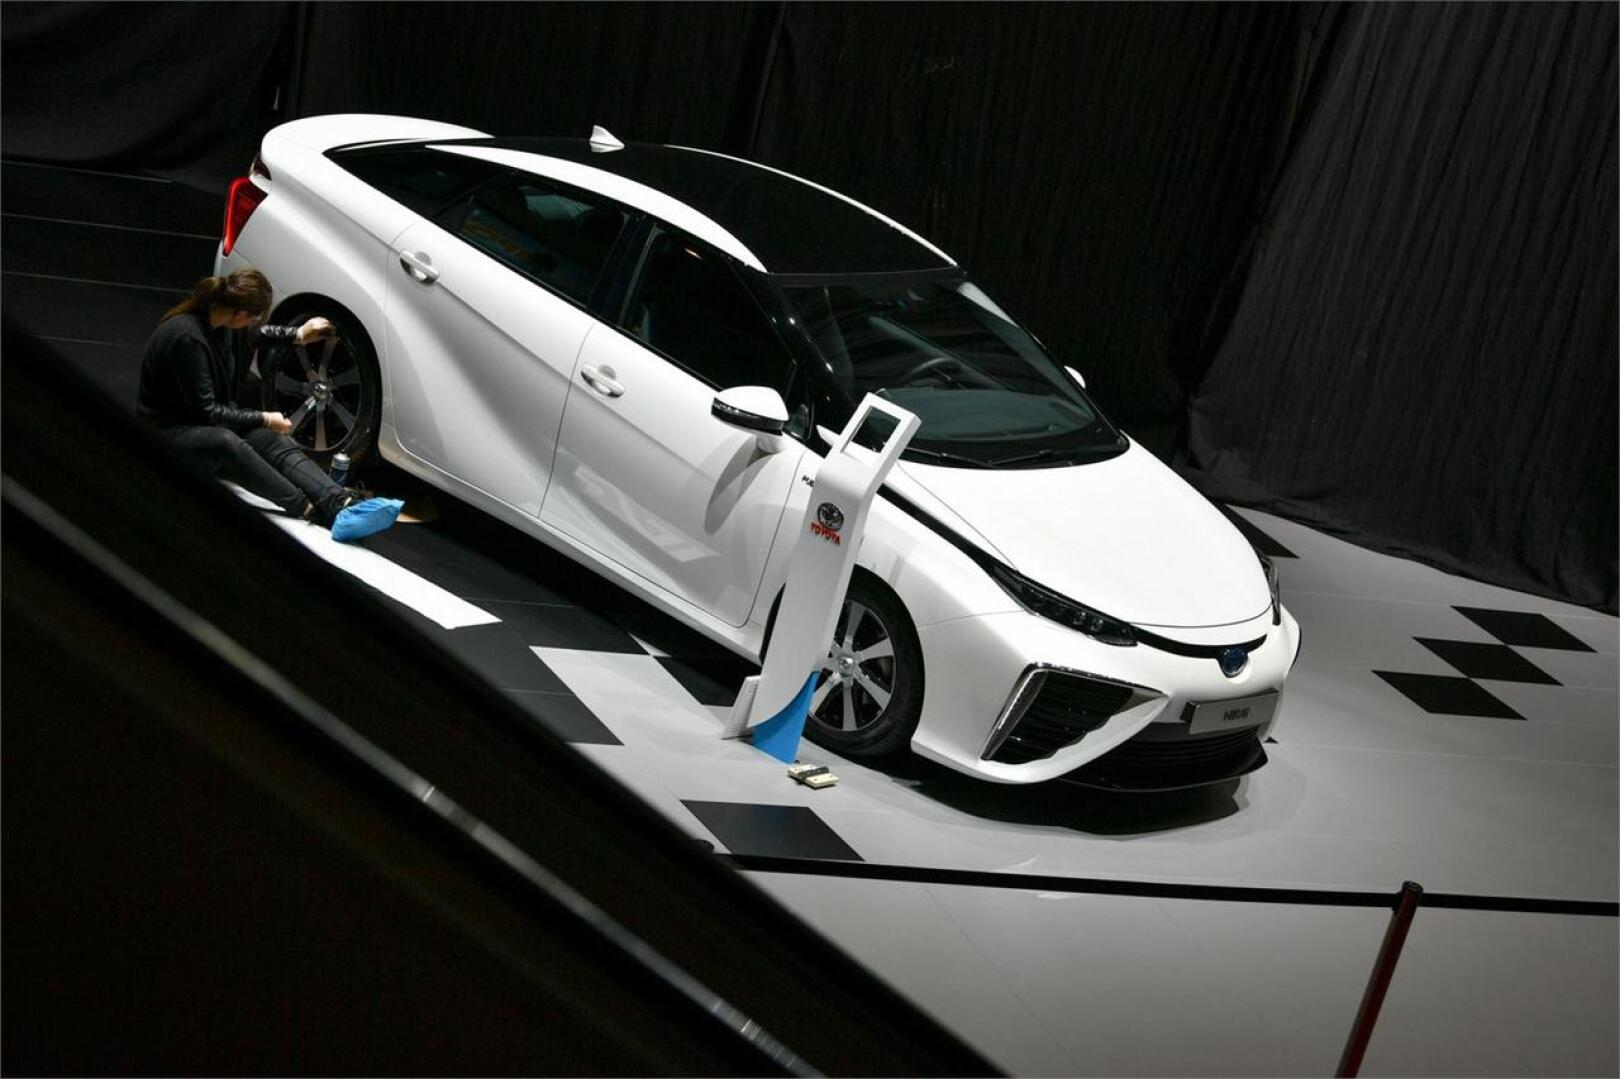 Toyota esittelee uusia mallejaan Geneven automessuilla. LEHTIKUVA/AFP